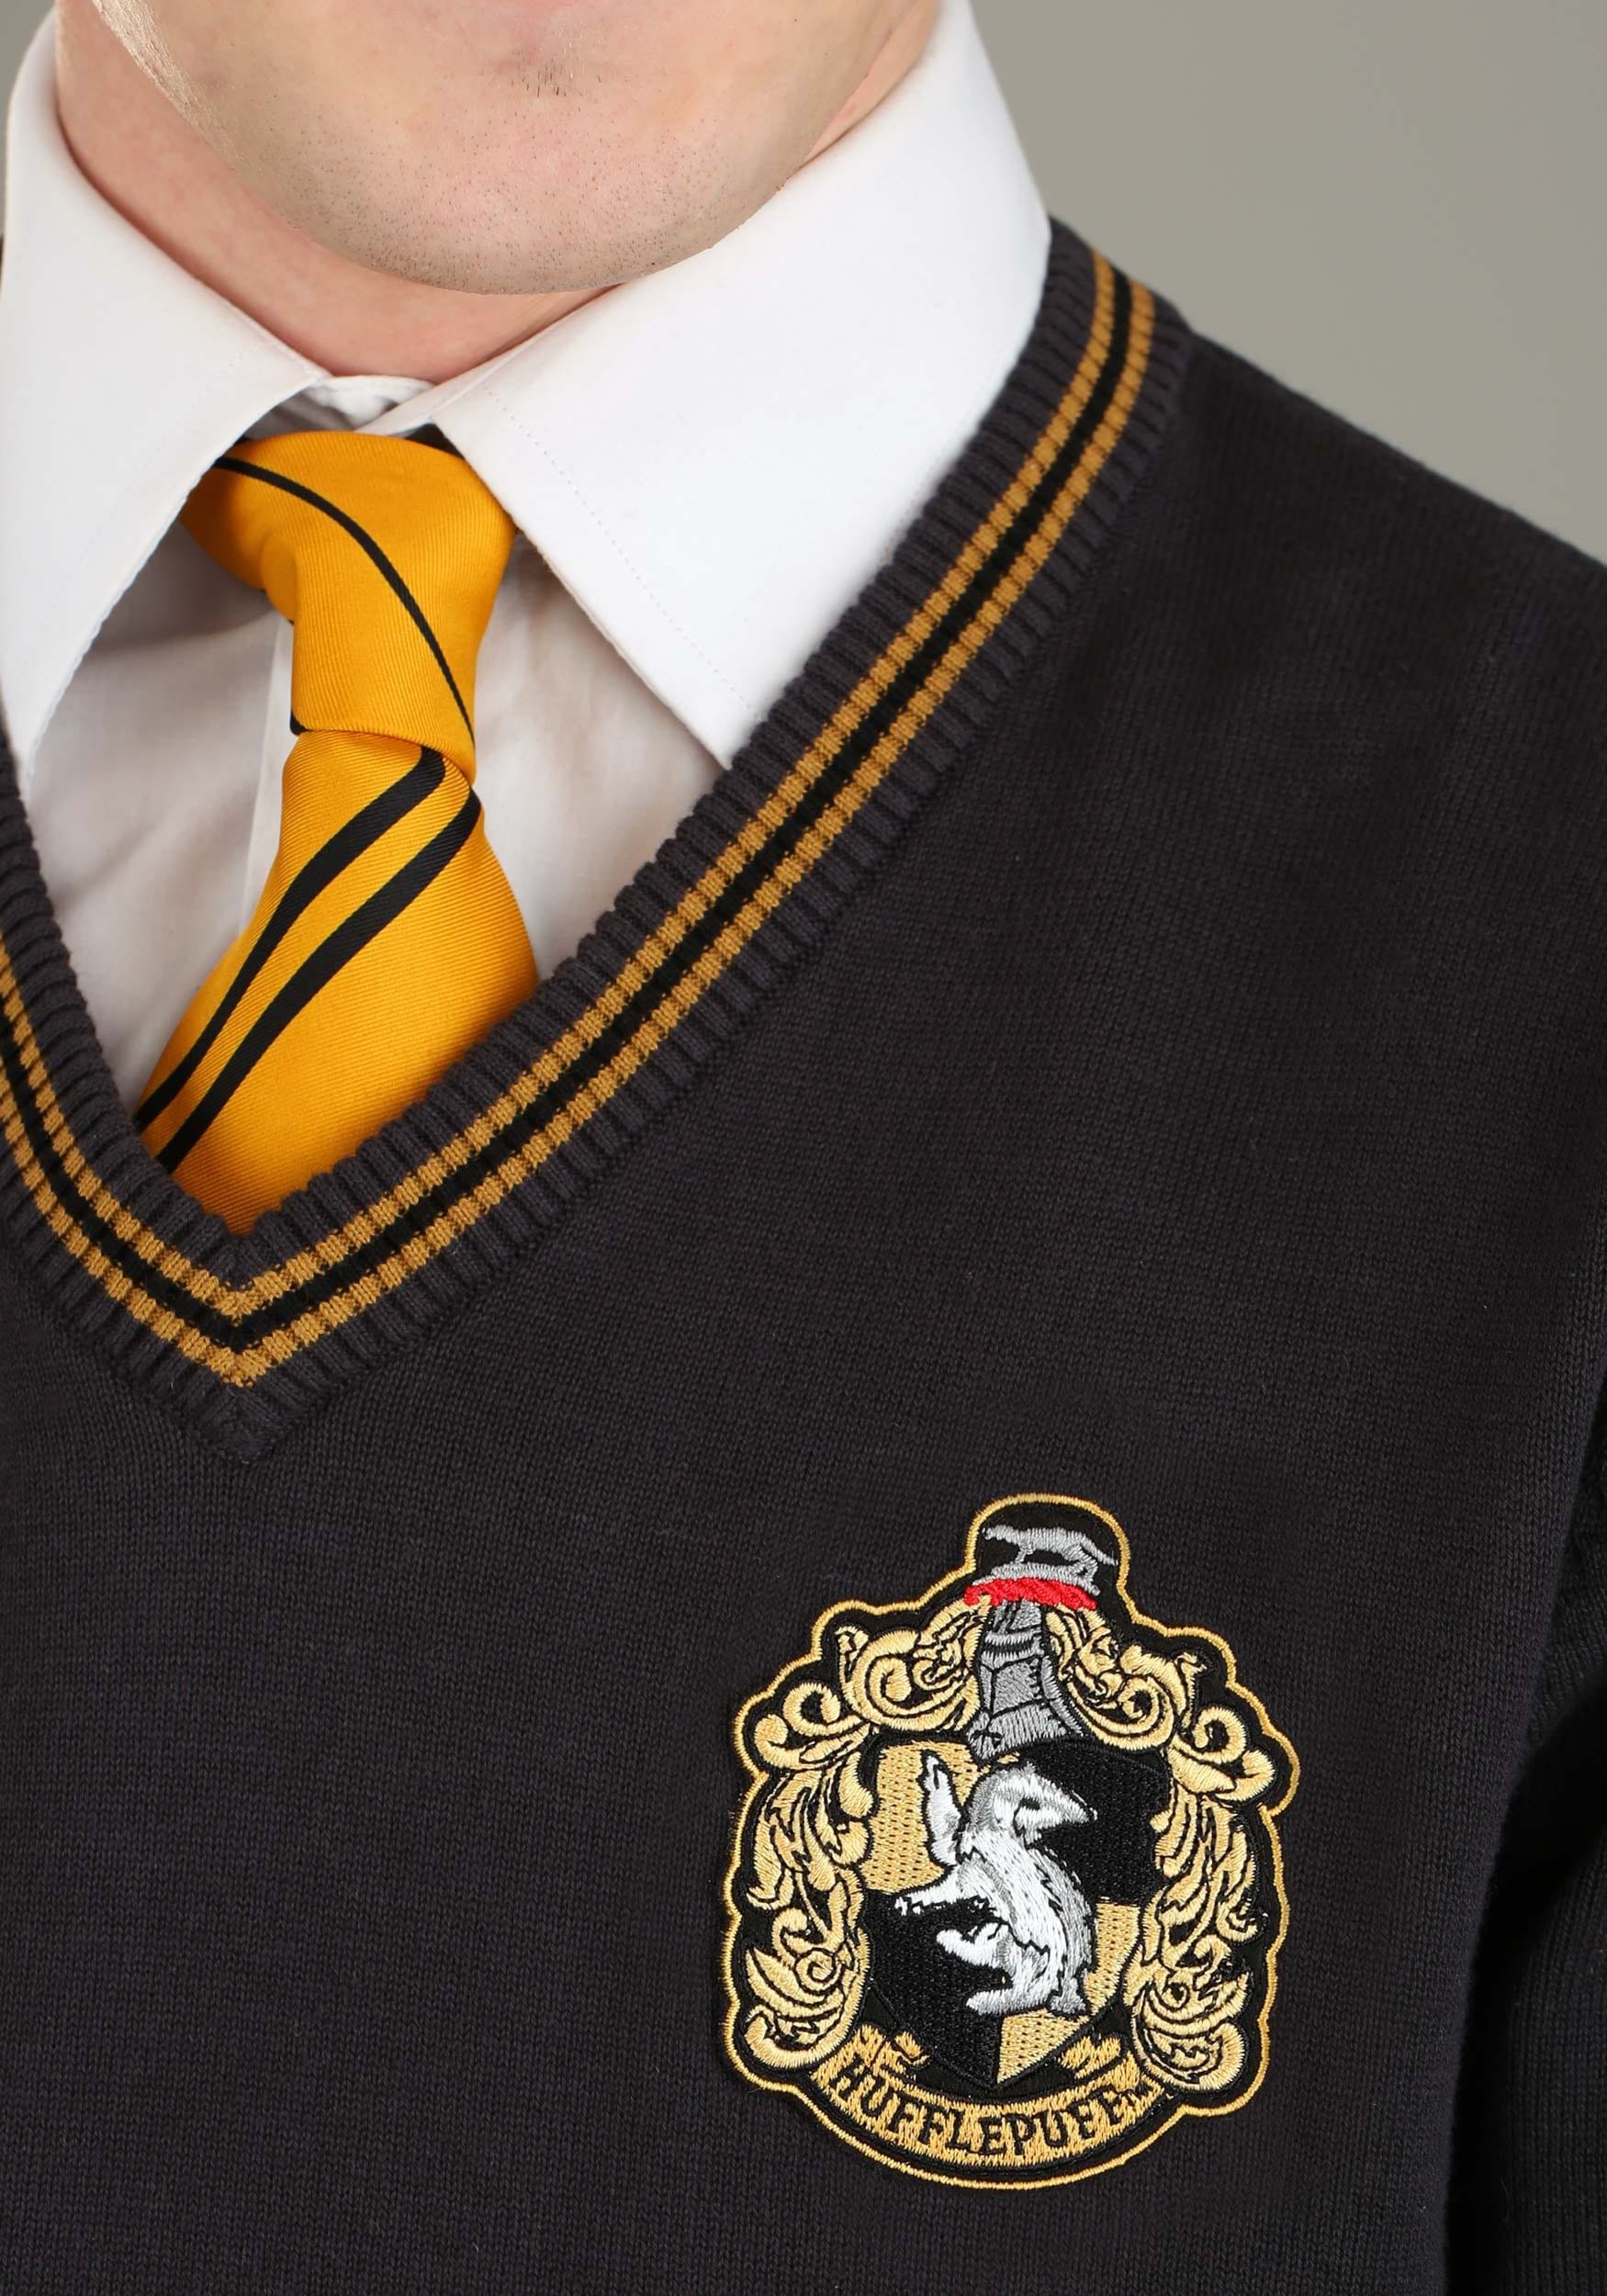 HARRY POTTER - Women Sweater - Hufflepuff School (XL) : ShopForGeek.com:  Jumper Cotton Division Harry Potter